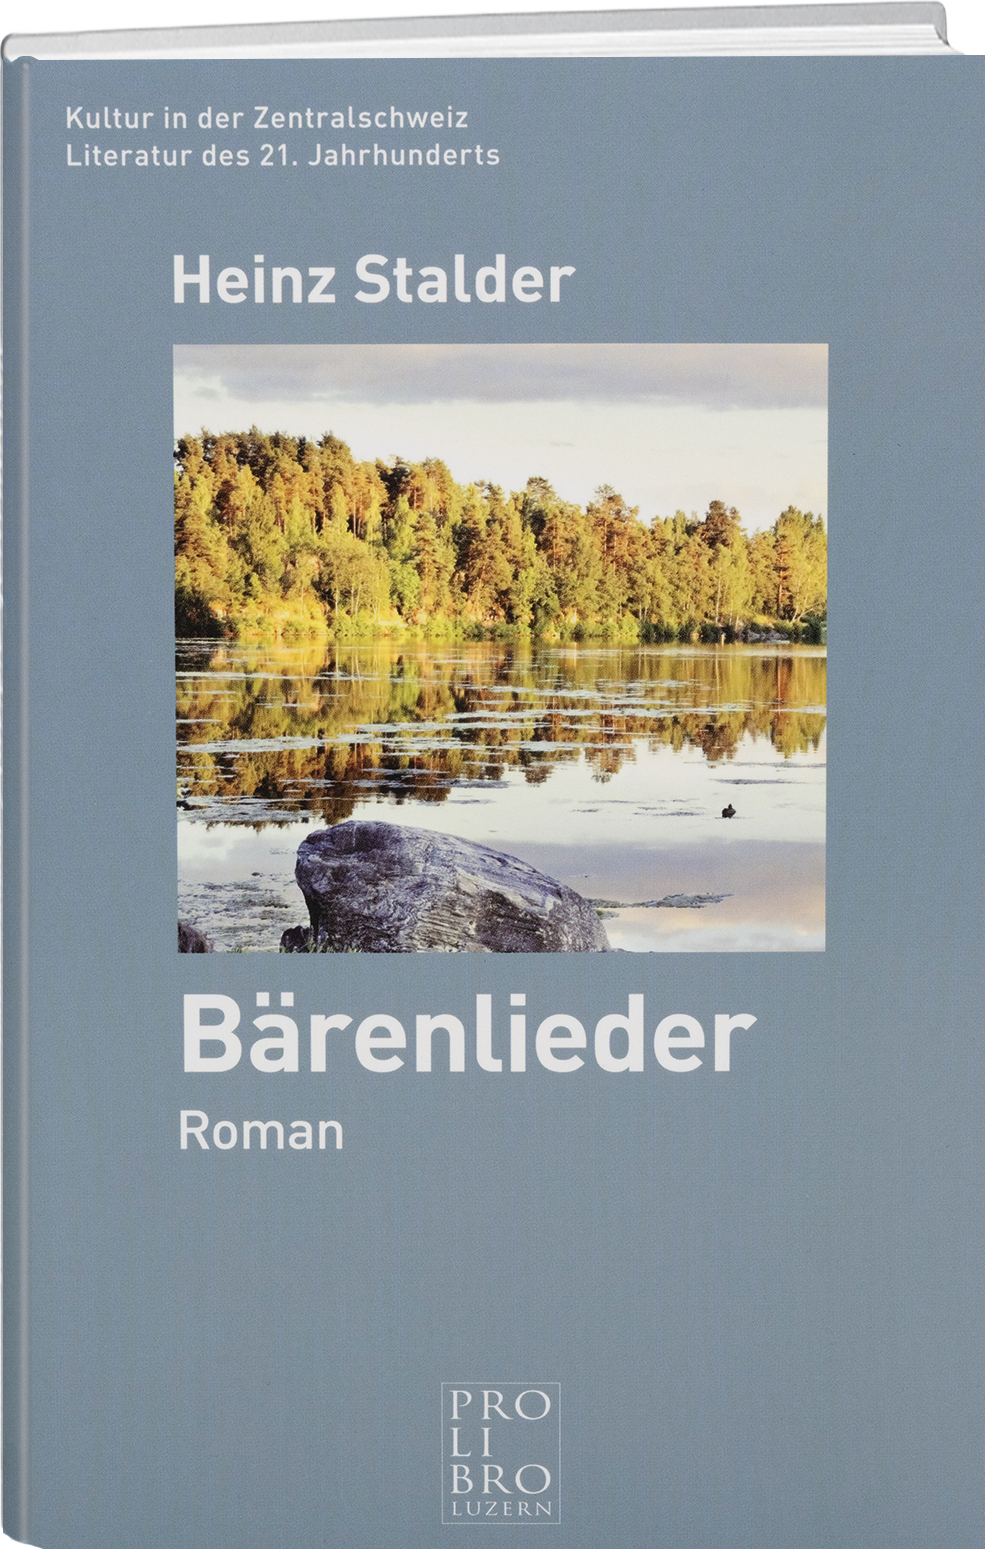 Heinz Stalder: Bärenlieder - prolibro.ch